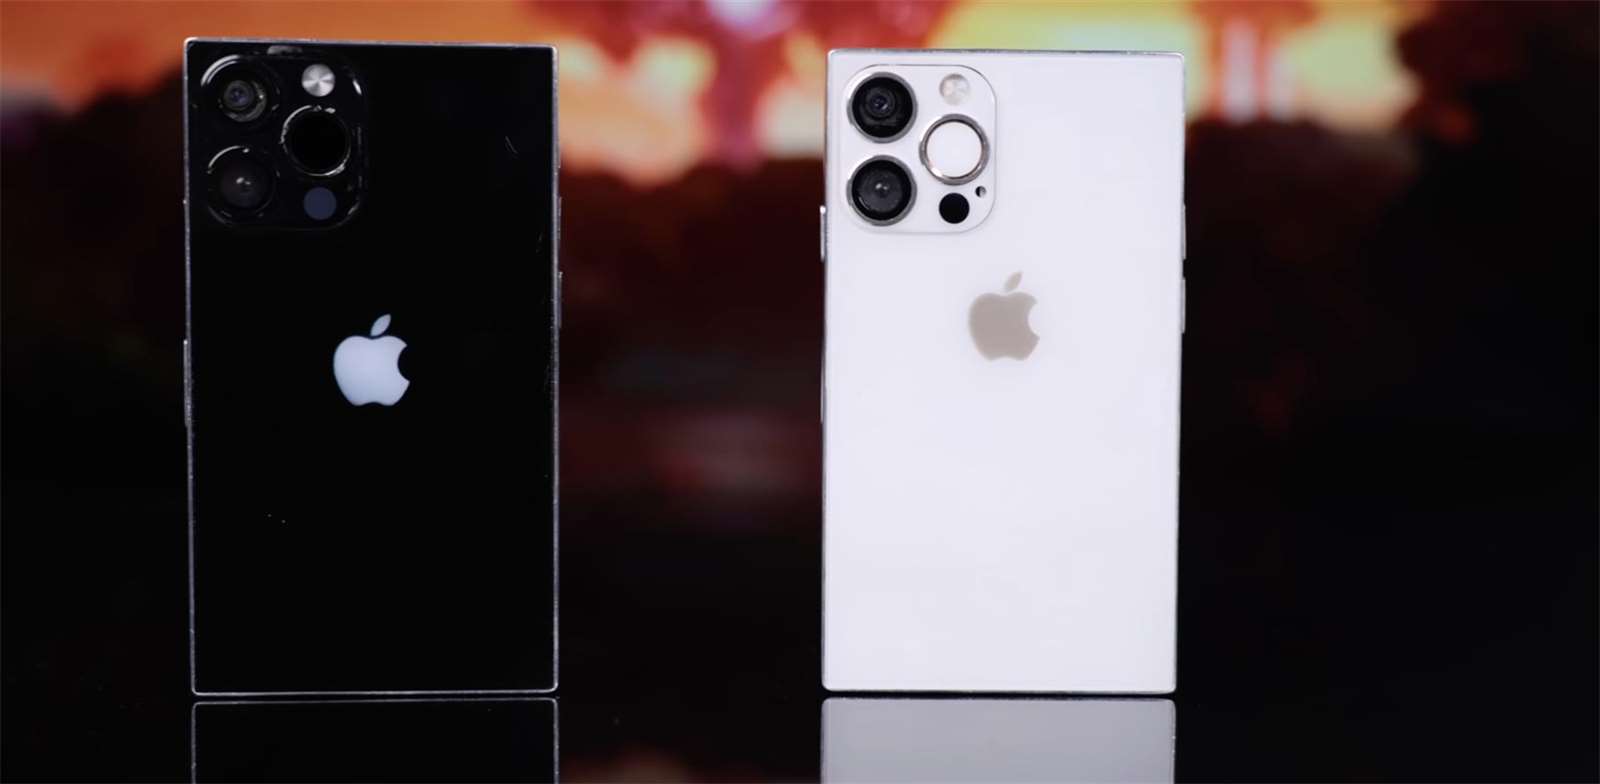 Galerie - Vykuchal iPhone a z dílů si sestavil svůj vlastní. Je malý, hranatý, bez výřezu a má USB-C – MobilMania.cz